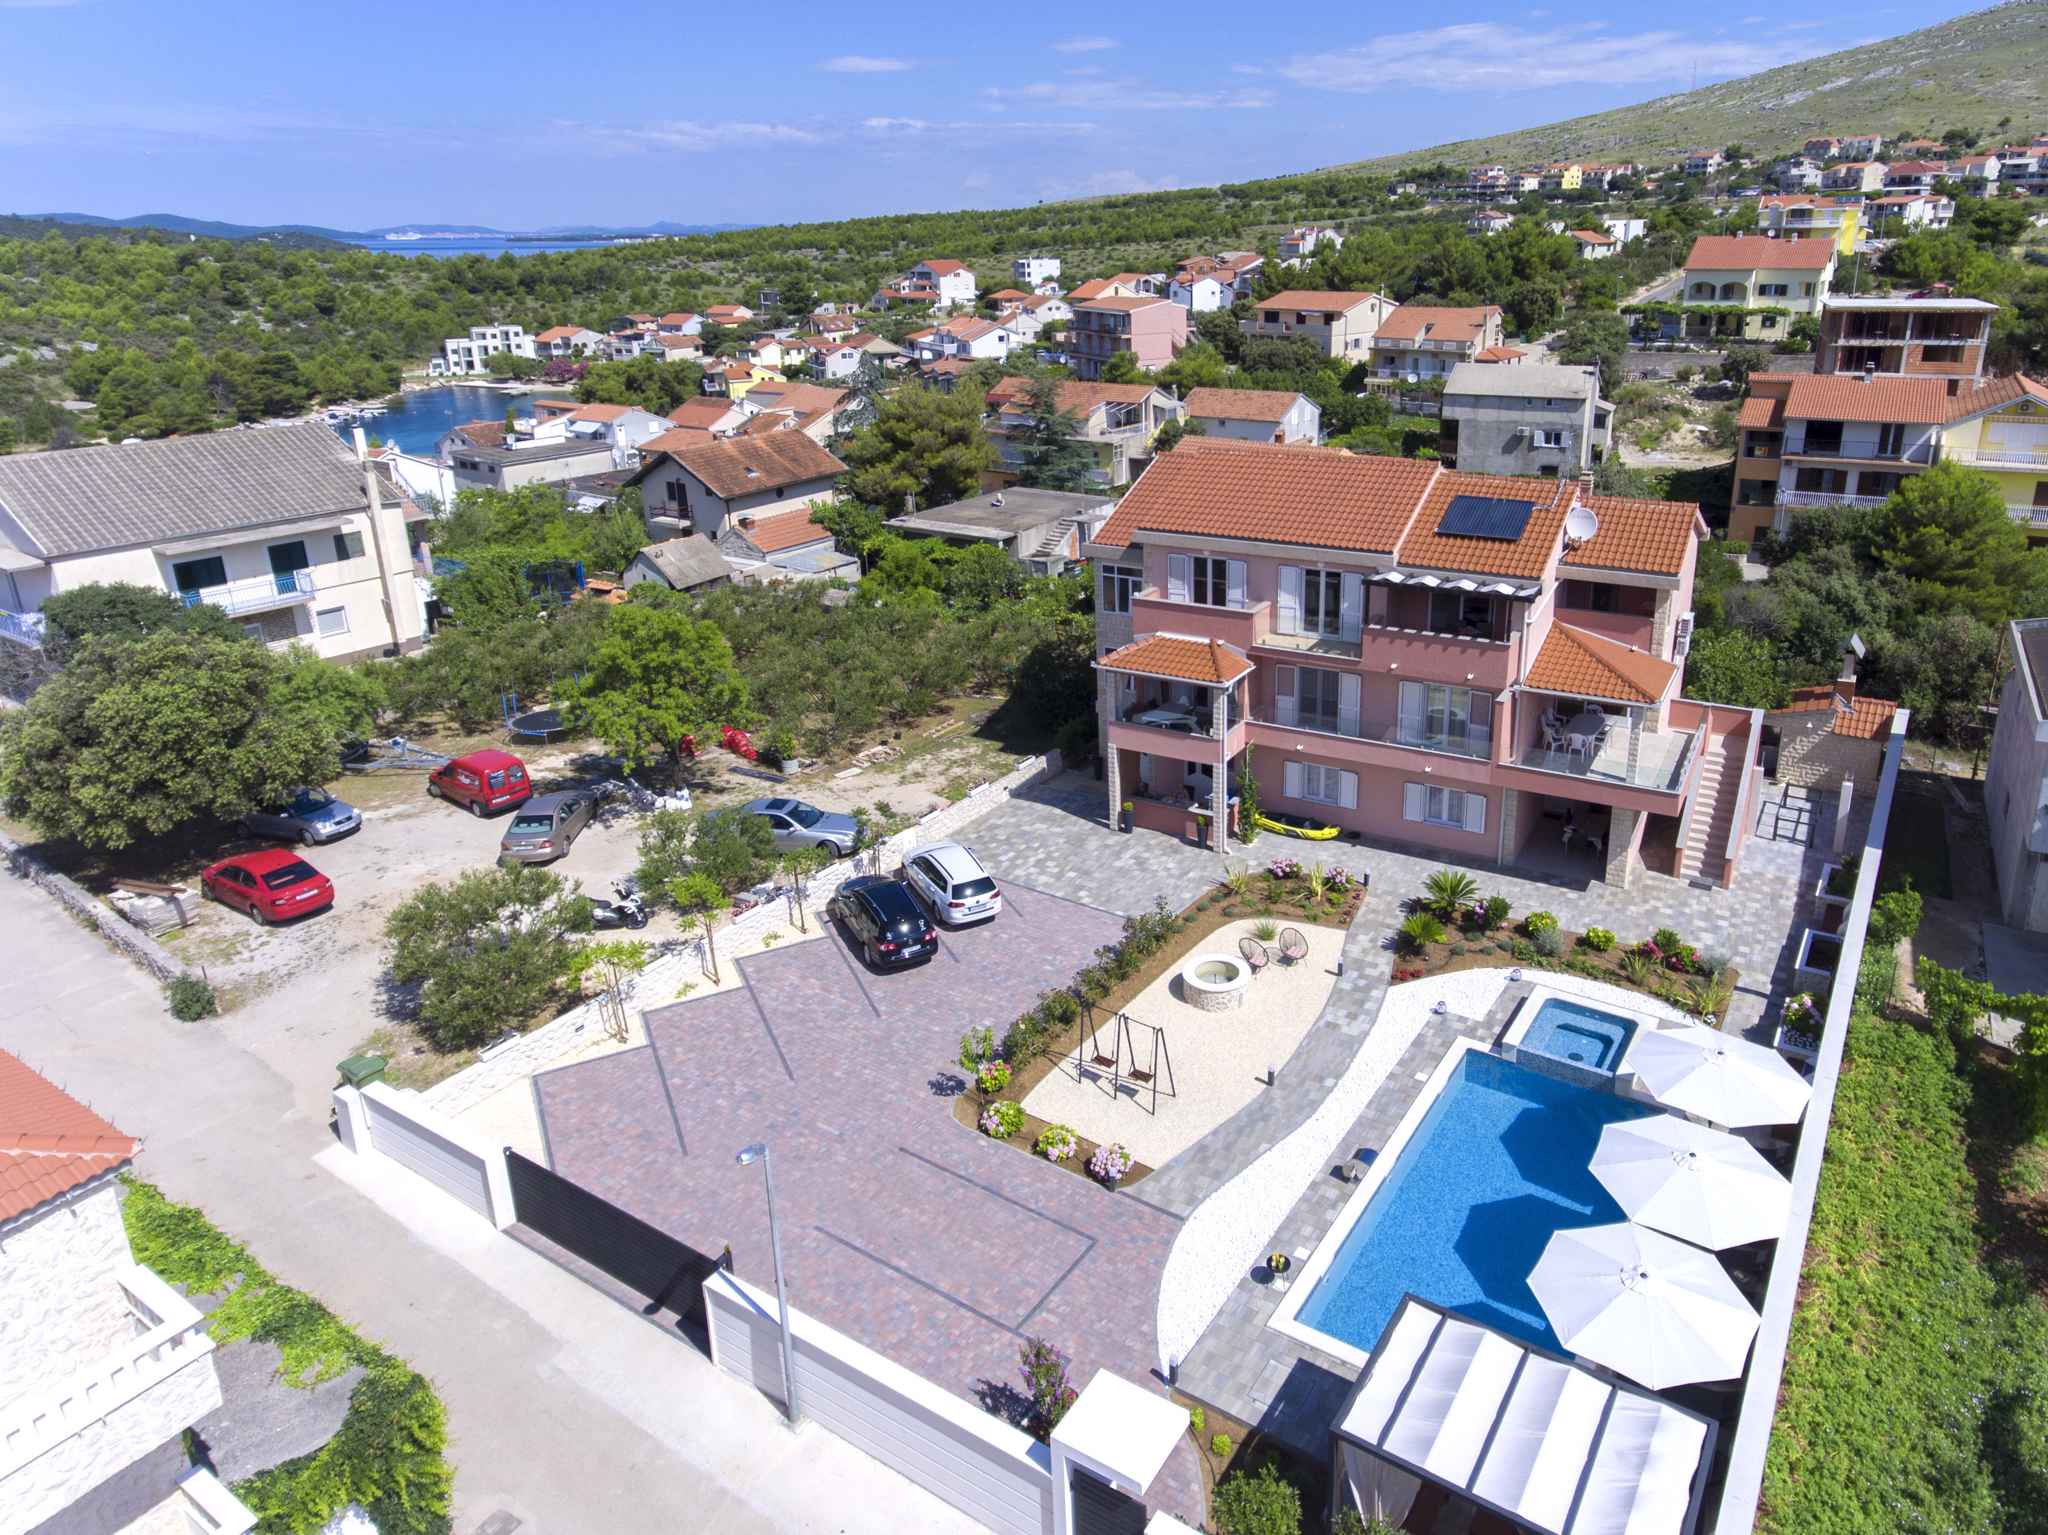 Ferienwohnung mit Terrasse und Pool  in Kroatien